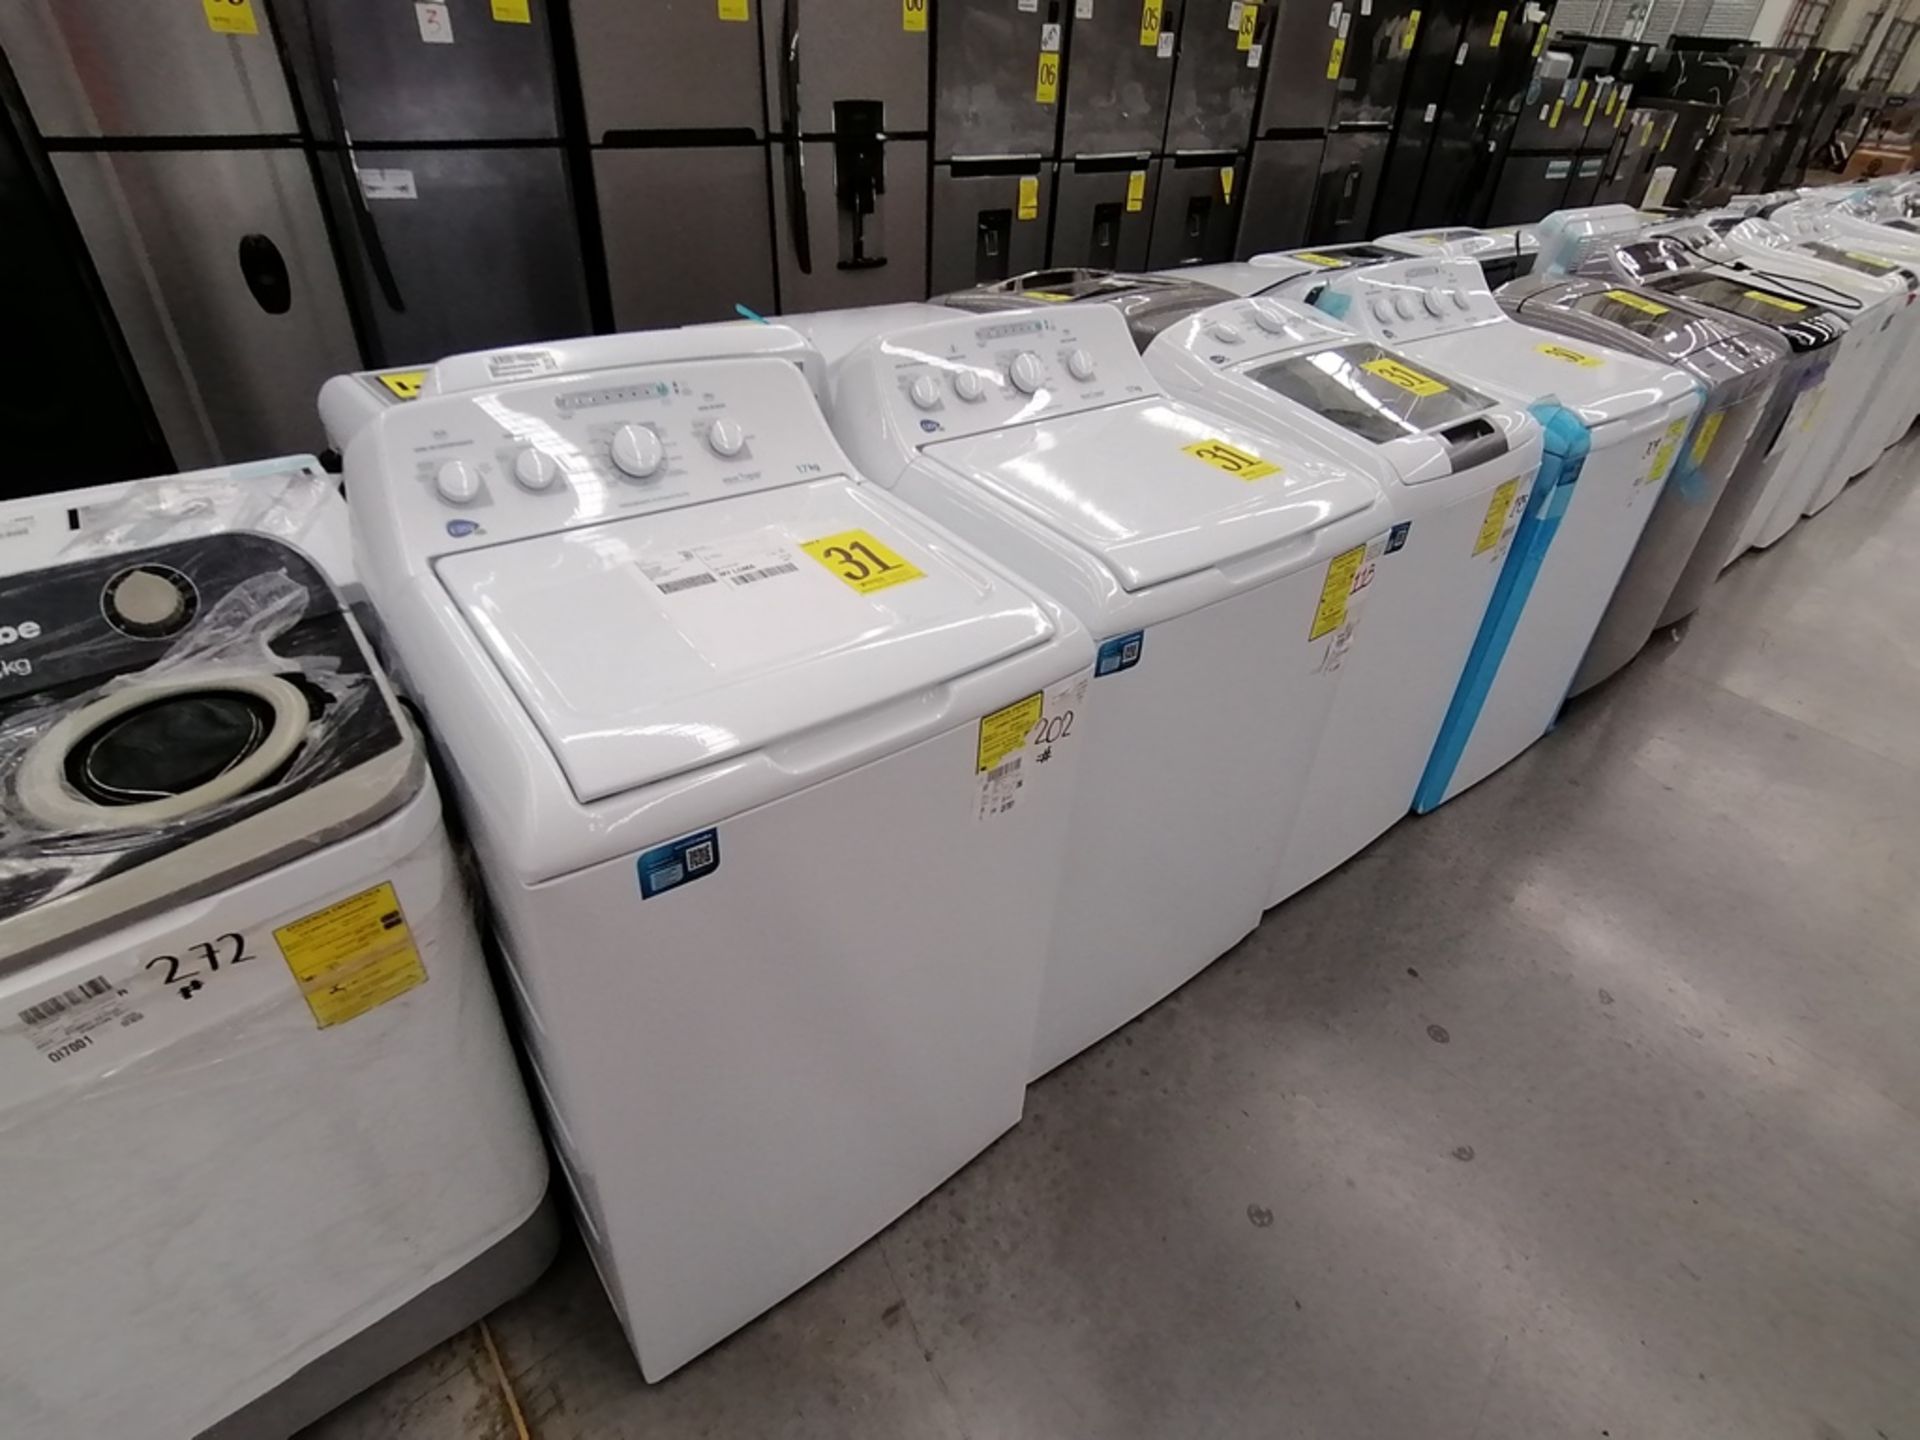 Lote de 3 lavadoras contiene: 1 Lavadora de 17KG, Marca Easy, Modelo LEA77114CBAB03, Serie 2105S522 - Image 15 of 30